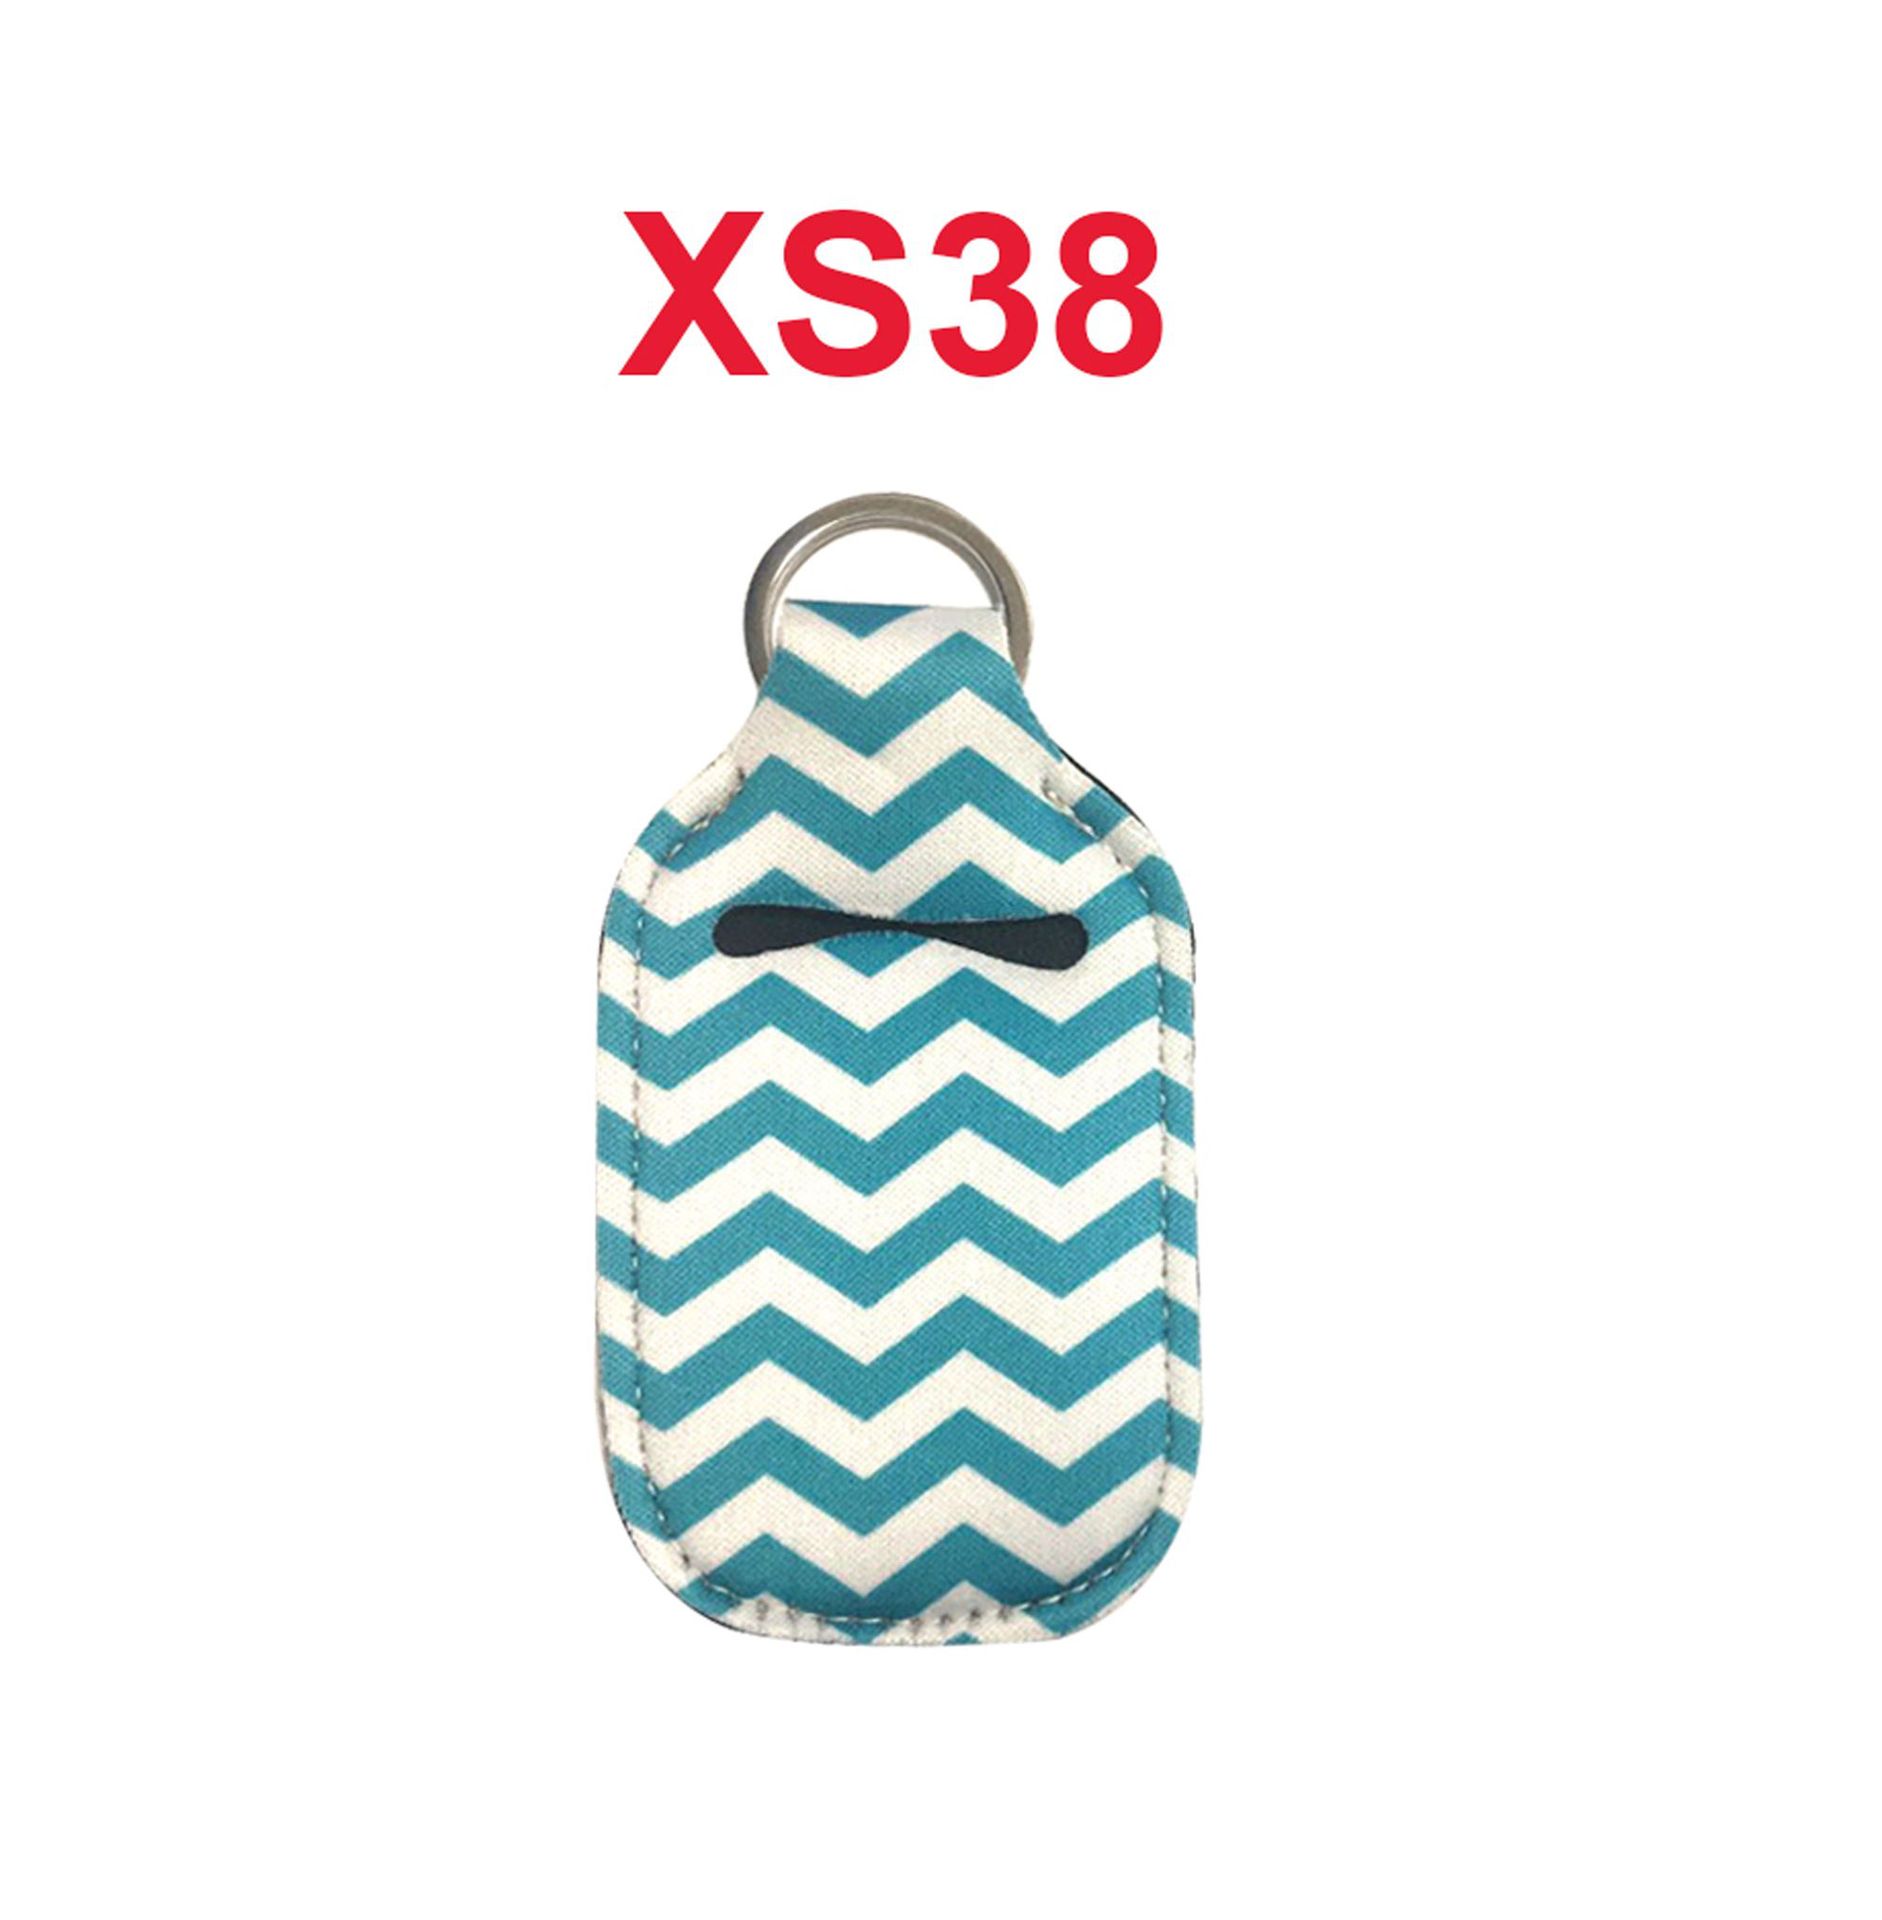 XS38